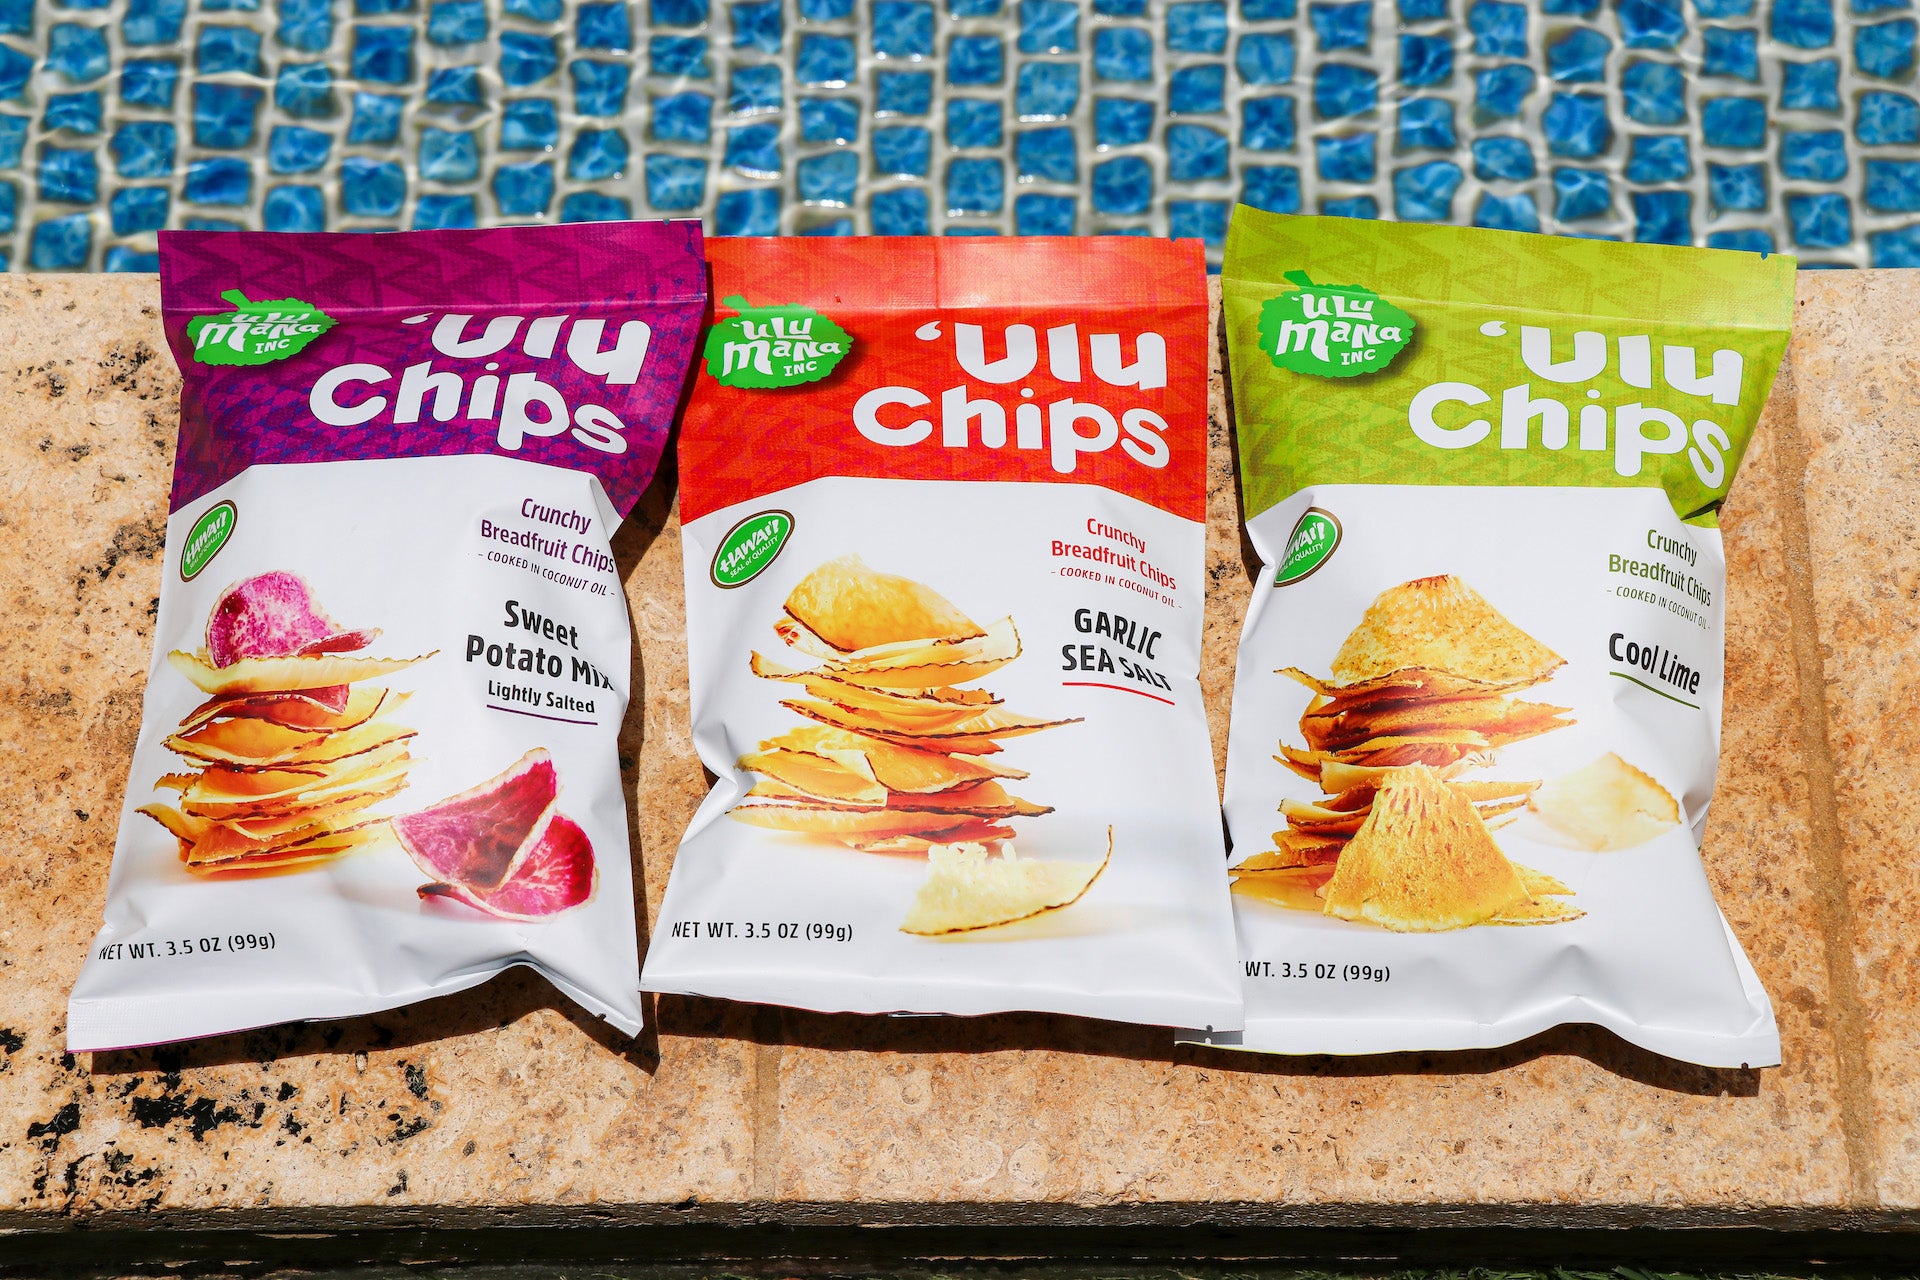 Ulu Chips (breadfruit chips)